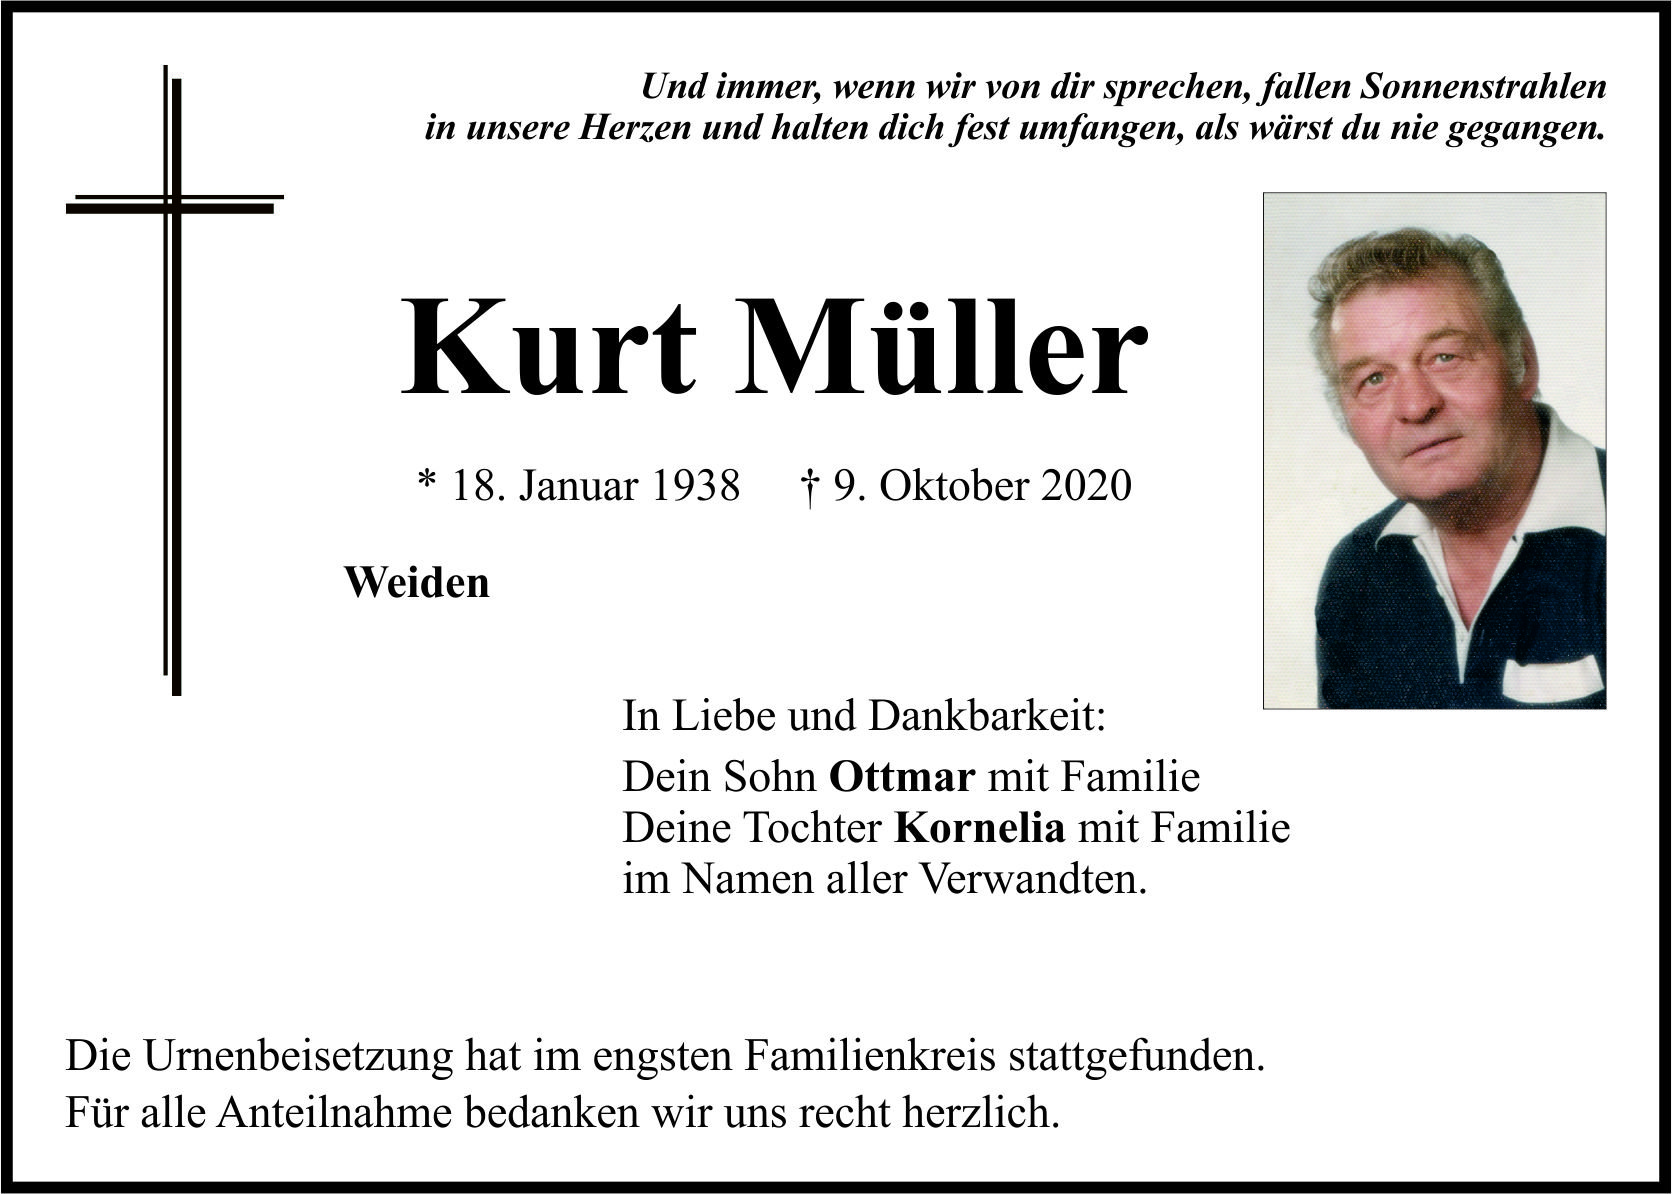 Traueranzeige Kurt Müller, Weiden